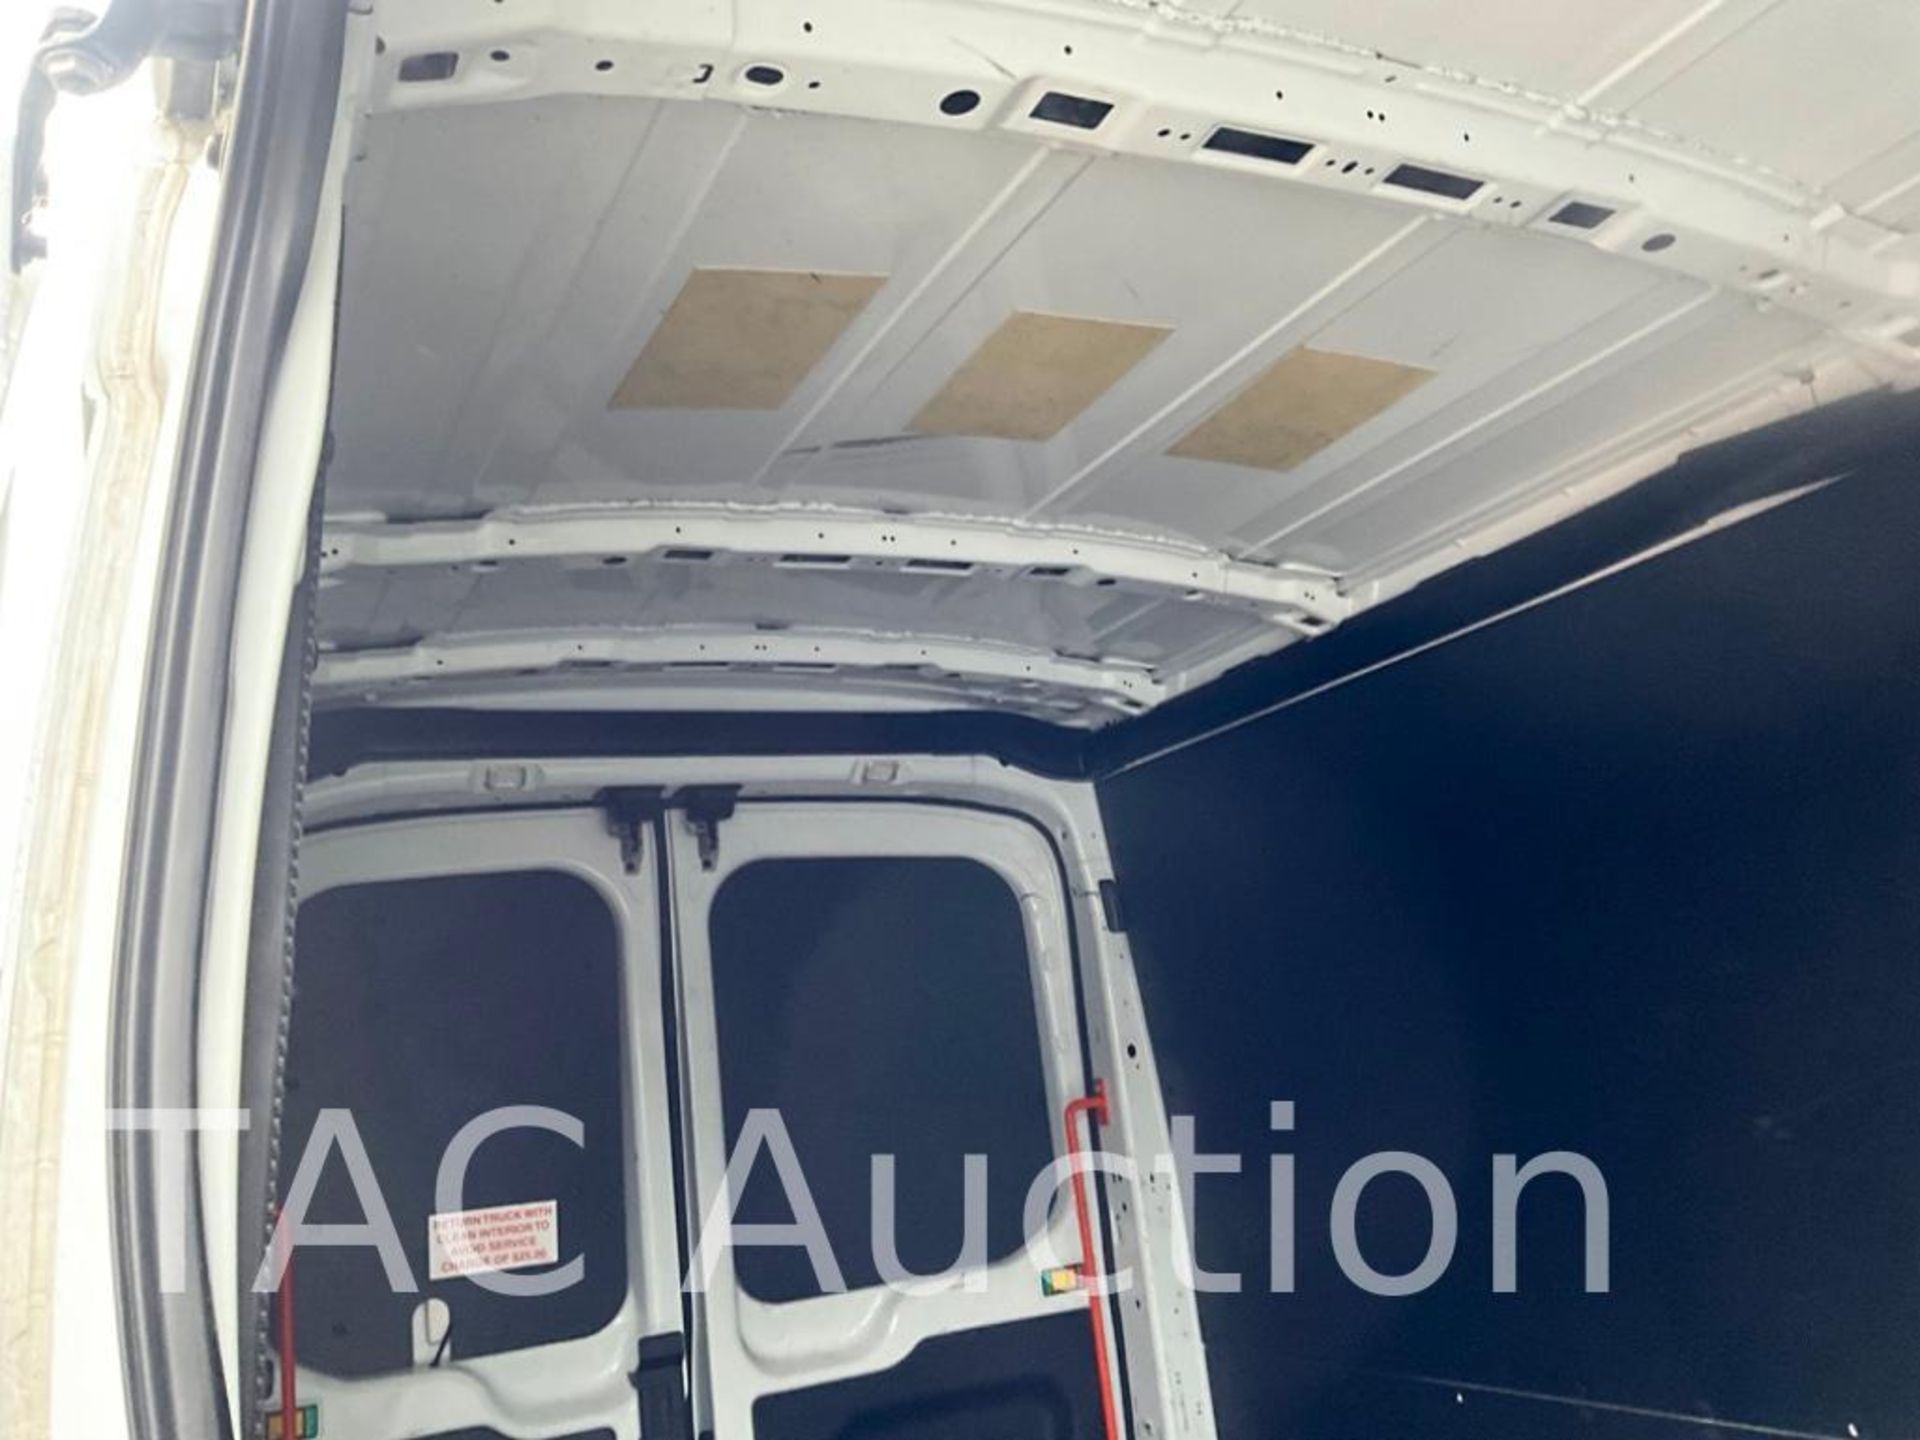 2019 Ford Transit 150 Cargo Van - Image 35 of 50